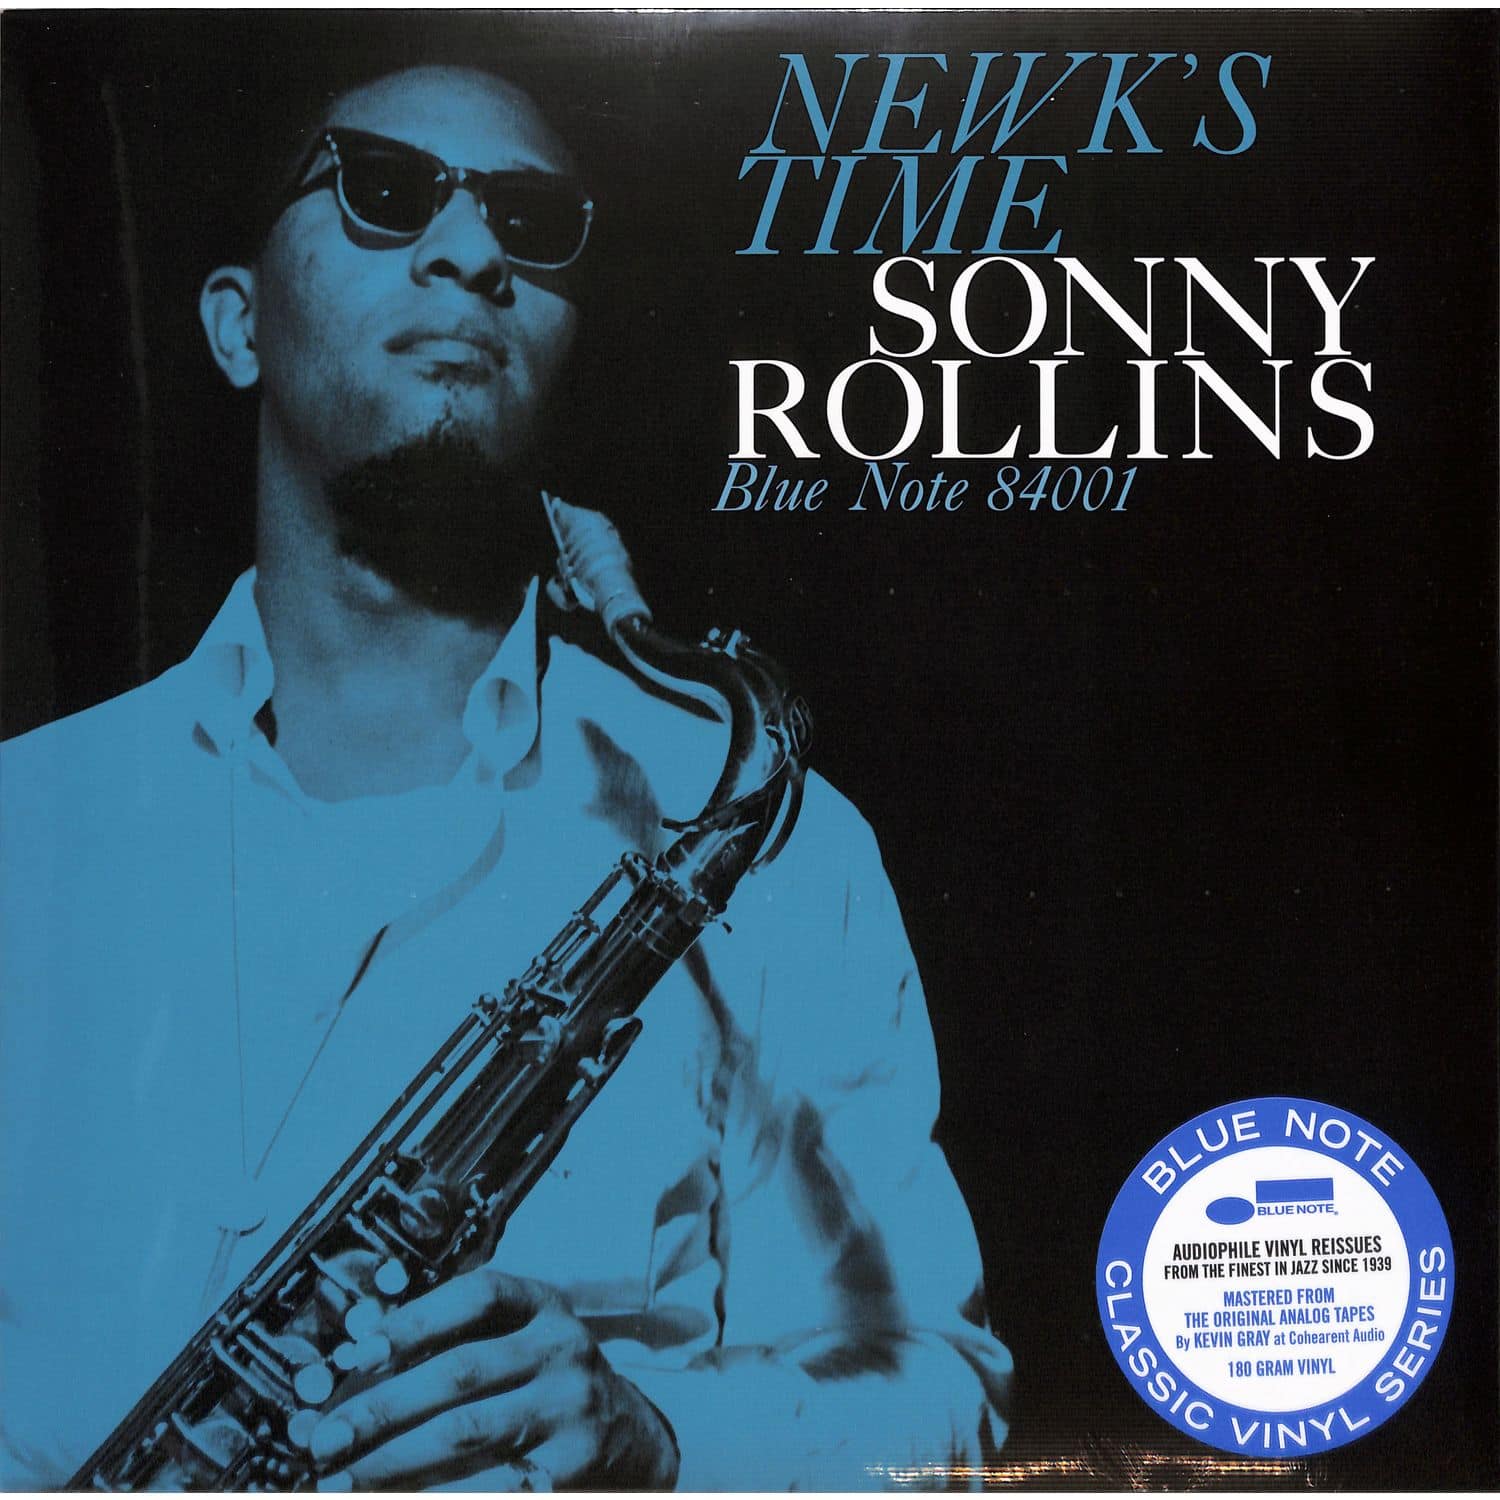 Sonny Rollins - NEWKS TIME 